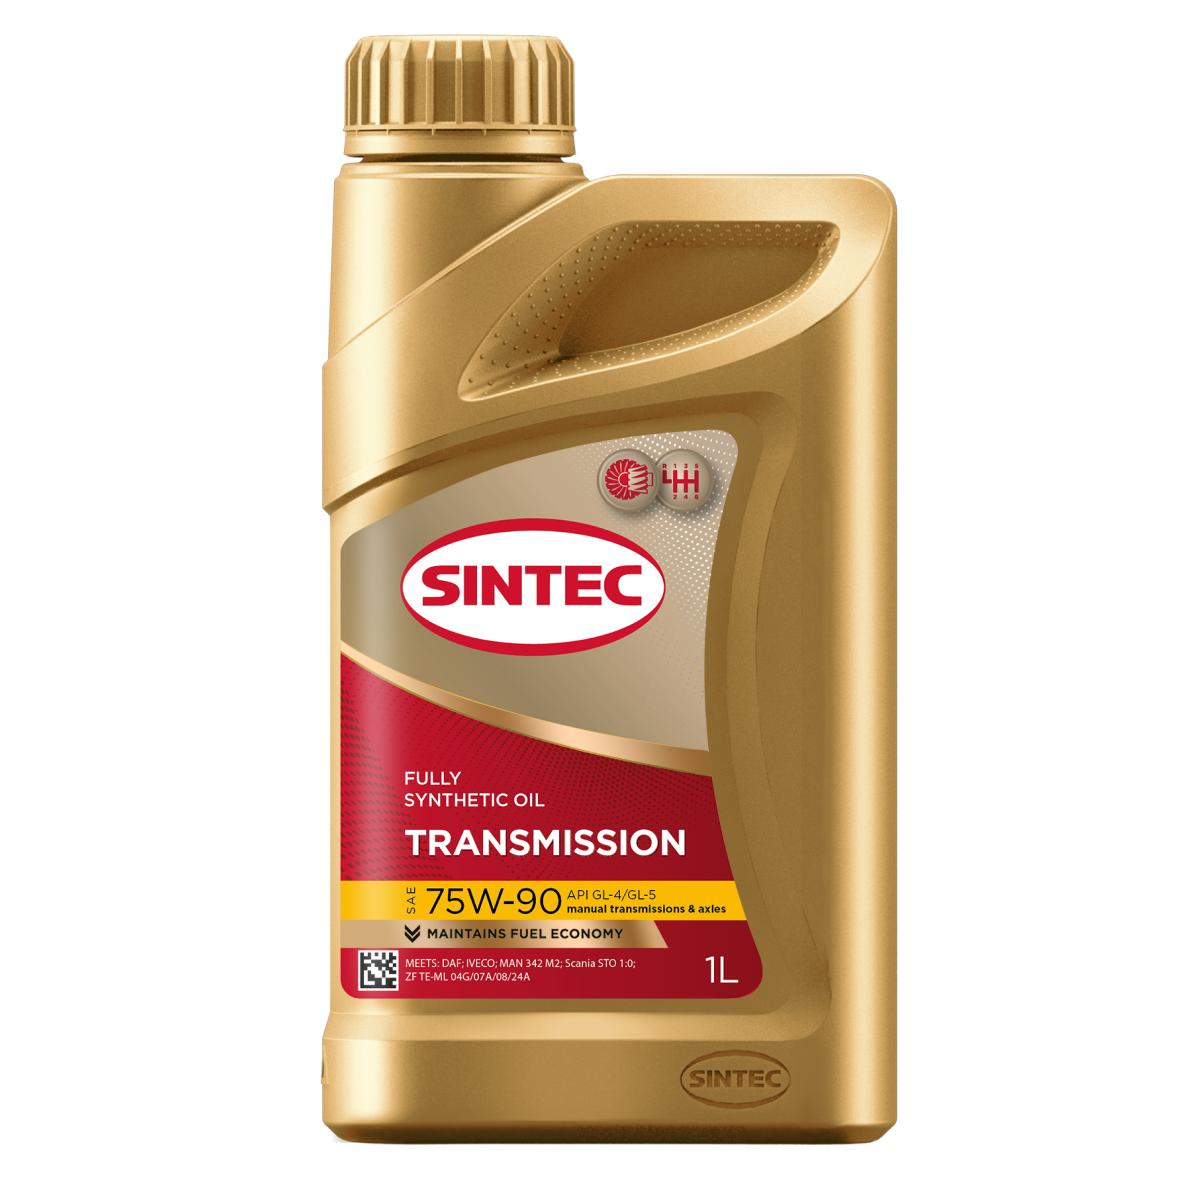 SINTEC TRANSMISSION SAE 75W-90 API GL-4/GL-5 Трансмиссионные масла: описание, применение, свойства, где
							купить